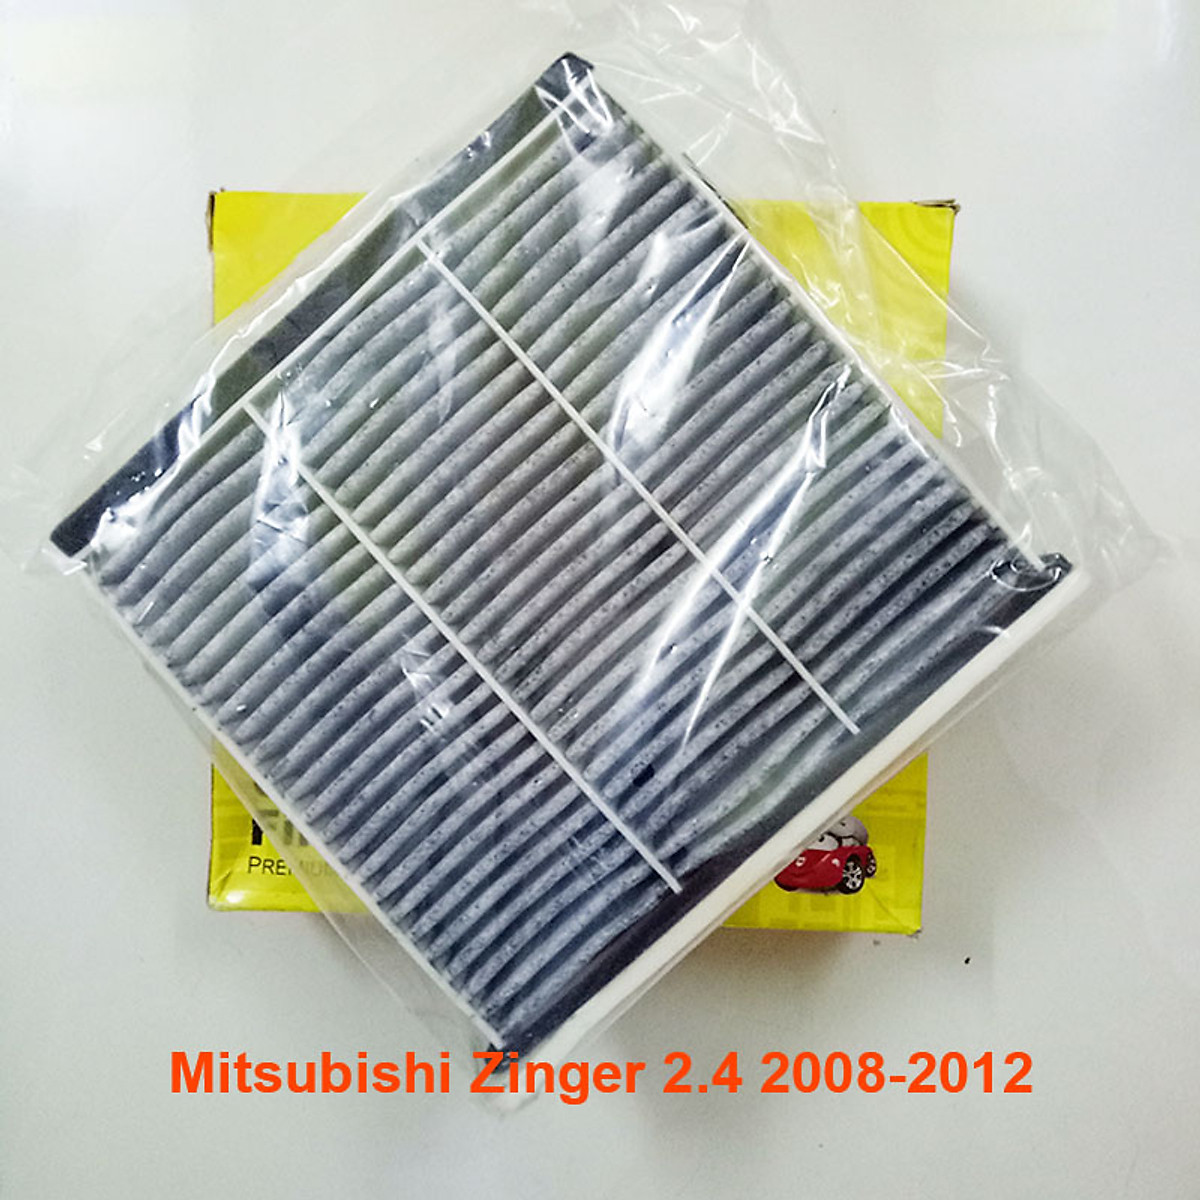 Mua Lọc gió điều hòa cho xe Mitsubishi Zinger Vietnam 24 2008 2009 2010  2011 2012 MR398288 mã AC3503  Không than hoạt tính tại Phutungoto123